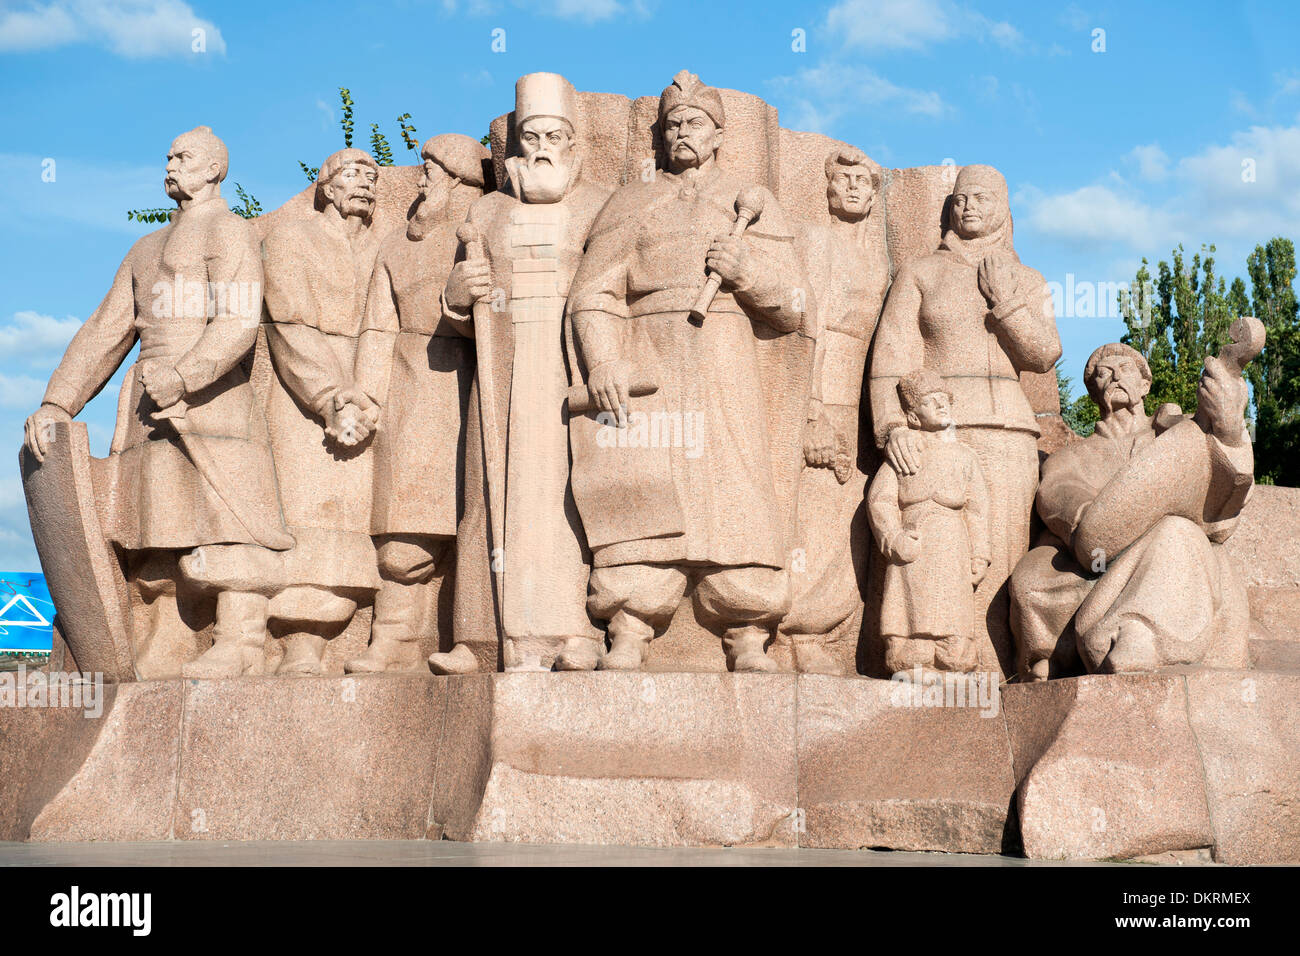 Une stèle de granit représentant les participants de la Conseil de Pereyaslav 1654. Ce monument est à Kiev, la capitale de l'Ukraine. Banque D'Images